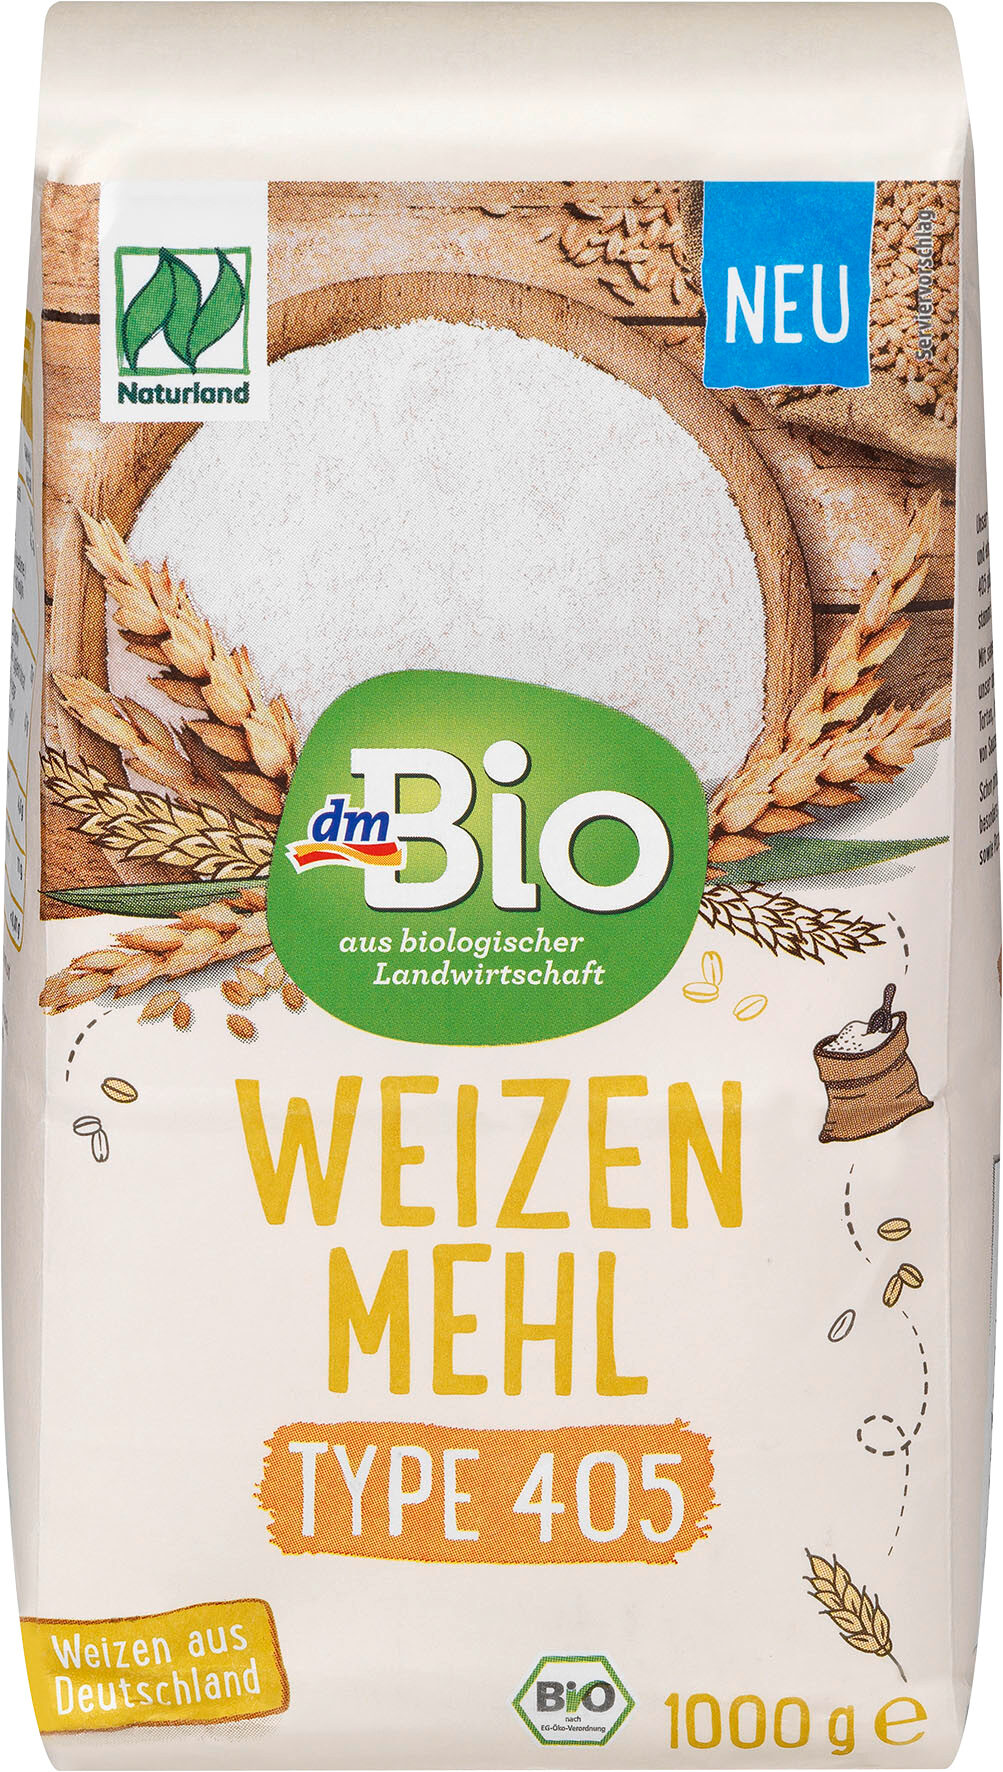 Weizenmehl T 405 - Produkt - de